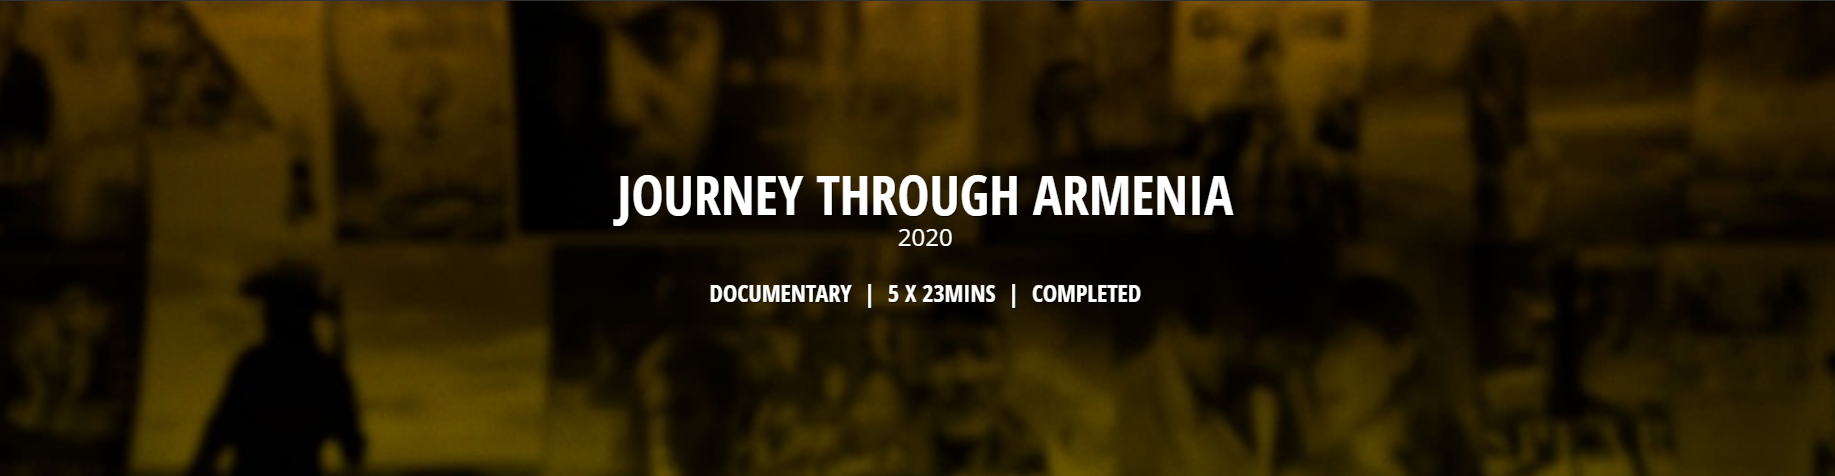 Journey Through Armenia S01E01 1080p